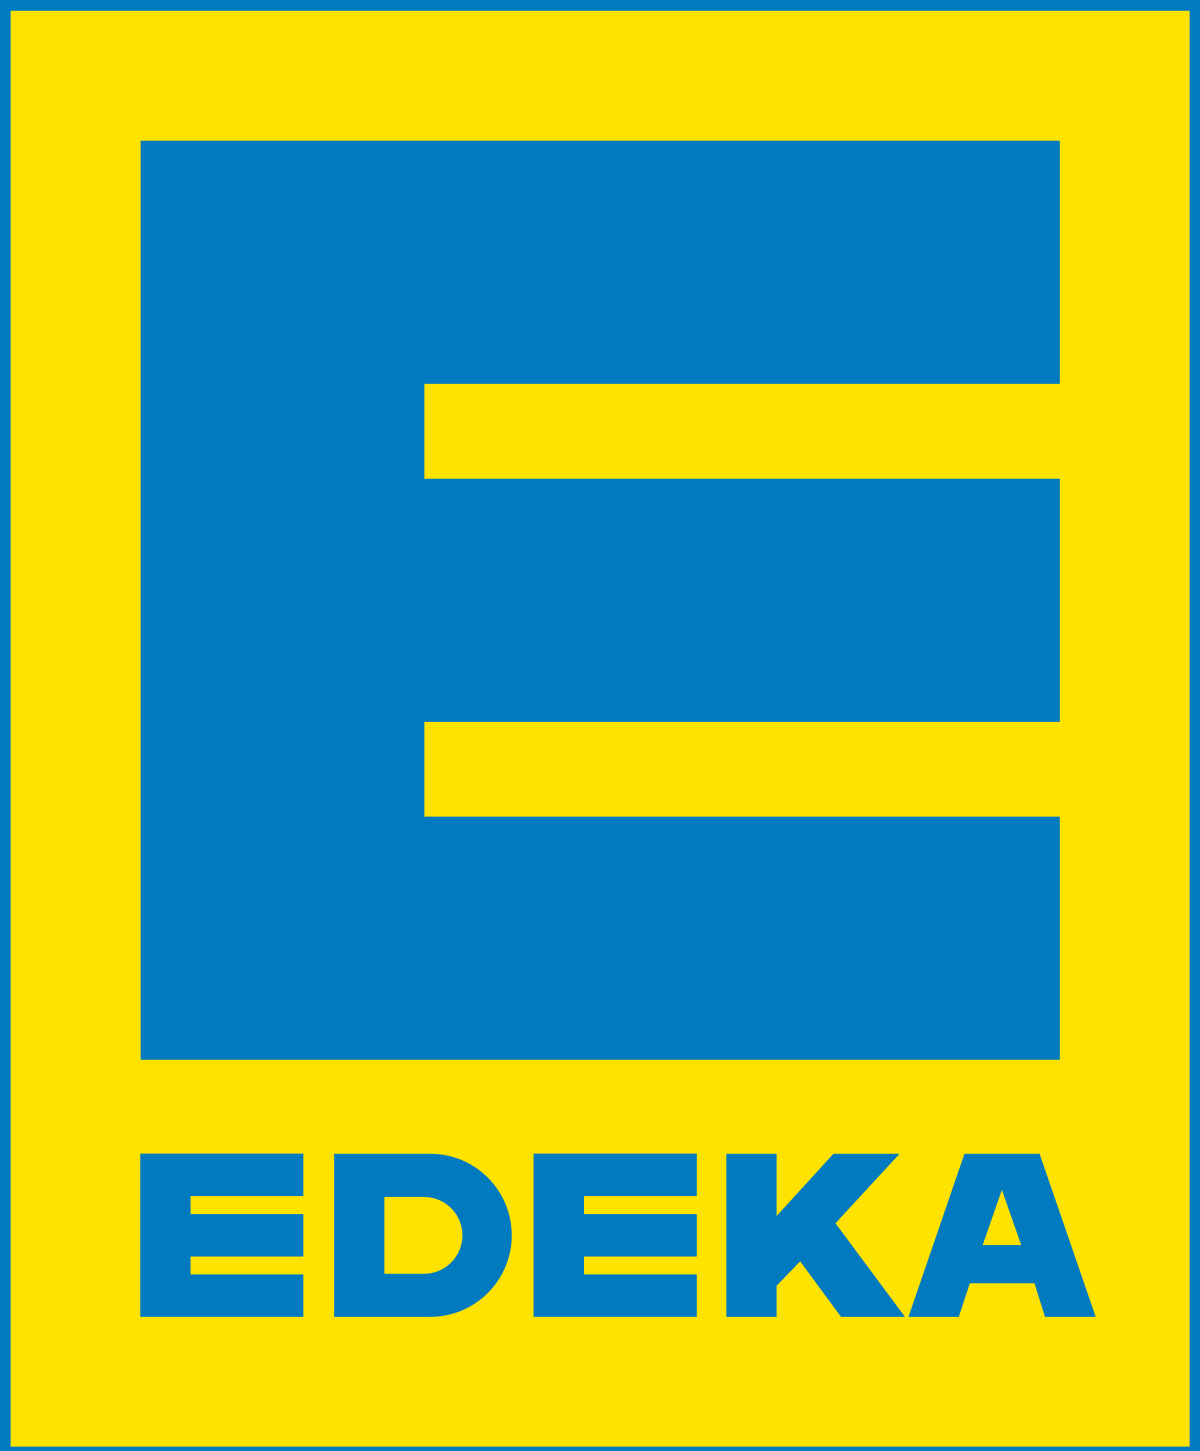 Edeka mbH